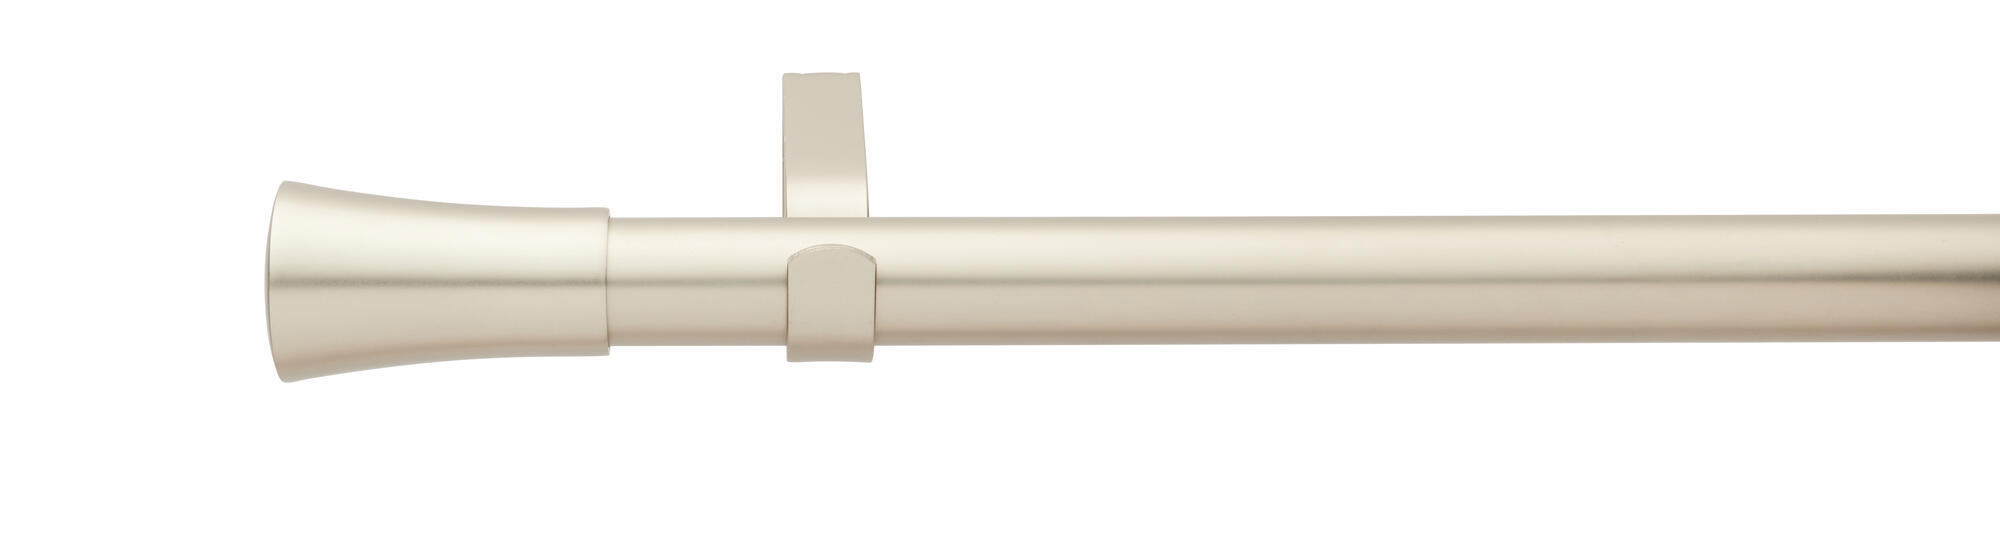 Kit bastone per tenda estensibile Imbuto in metallo 28/25mm acciaio opaco da 200 a 360 cm INSPIRE - 4